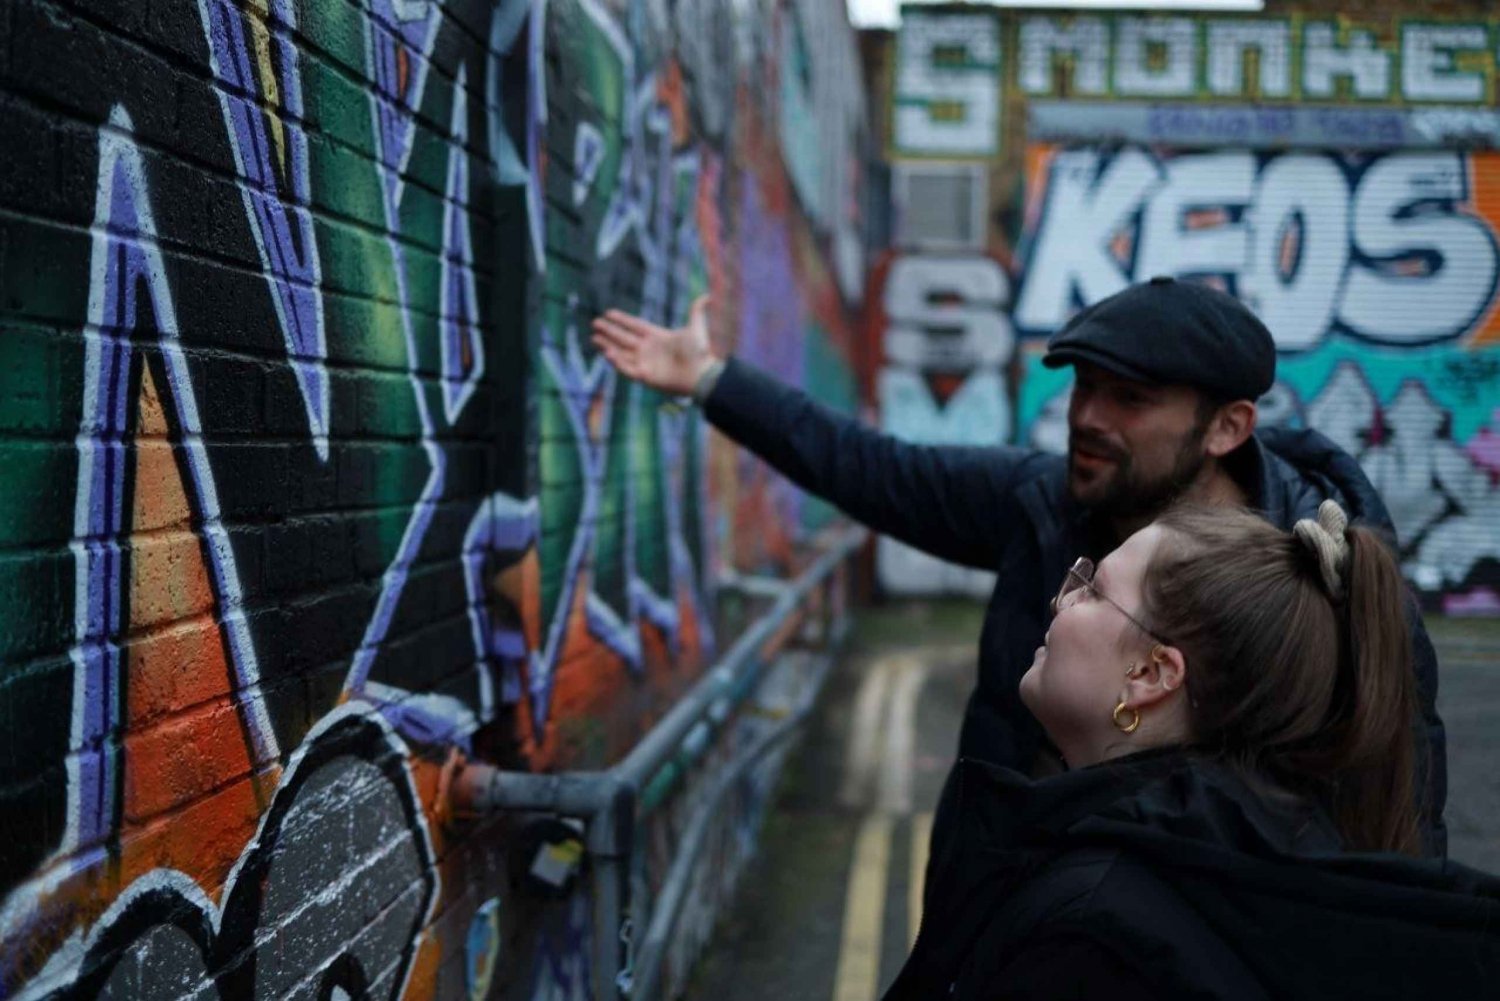 Lienzo Urbano: Explorando el vibrante arte callejero de Shoreditch